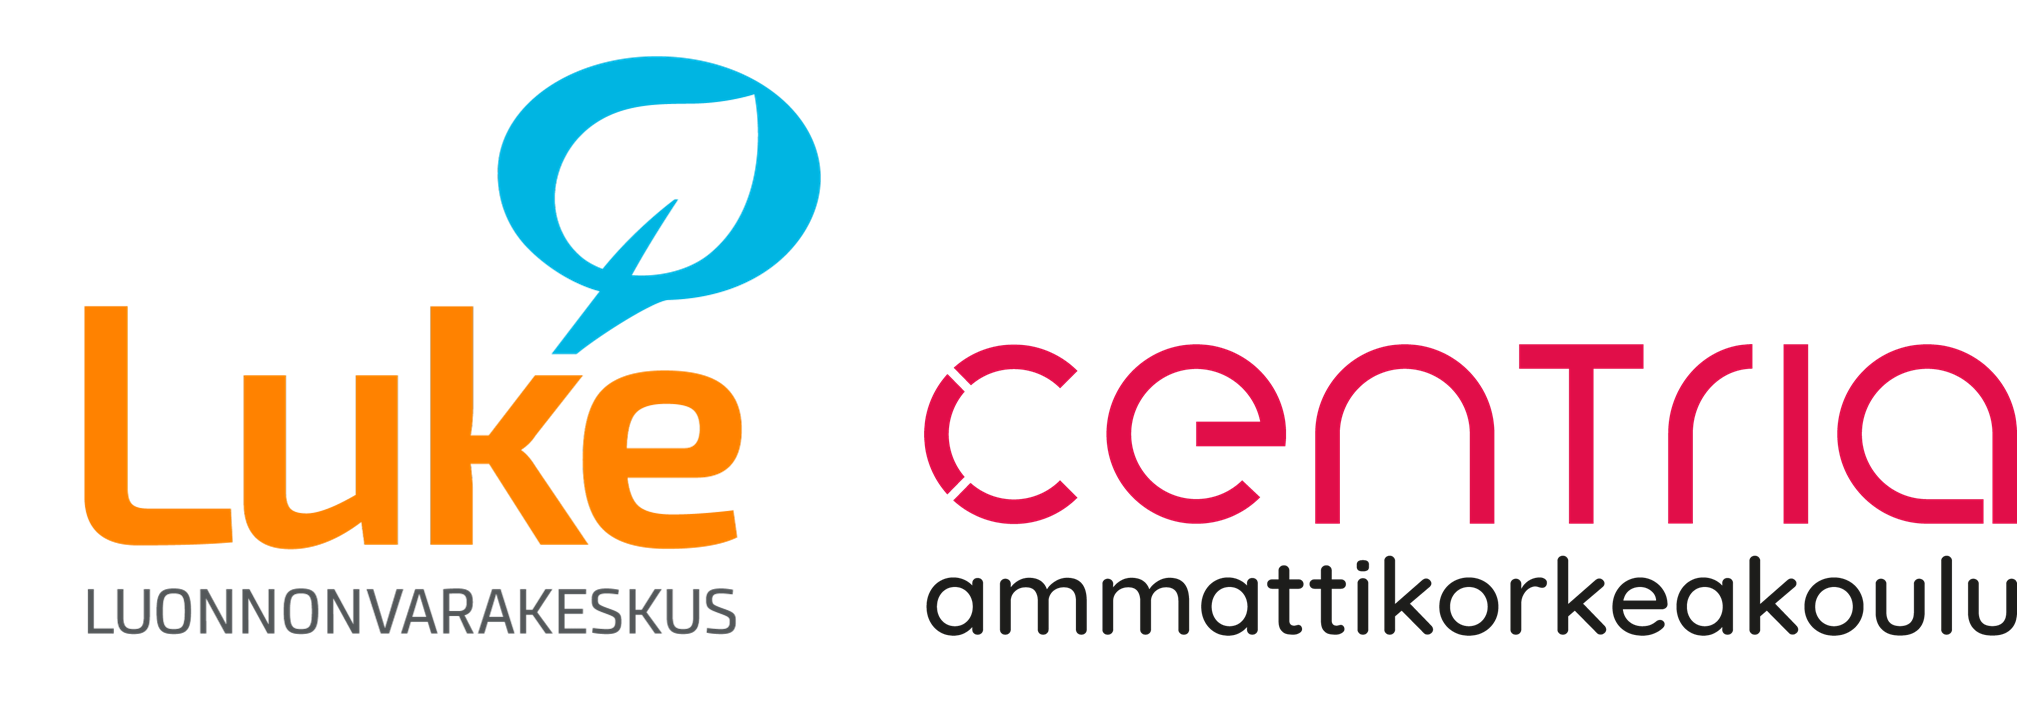 Luonnonvarakeskuksen ja Centria-ammattikorkeakoulun logot